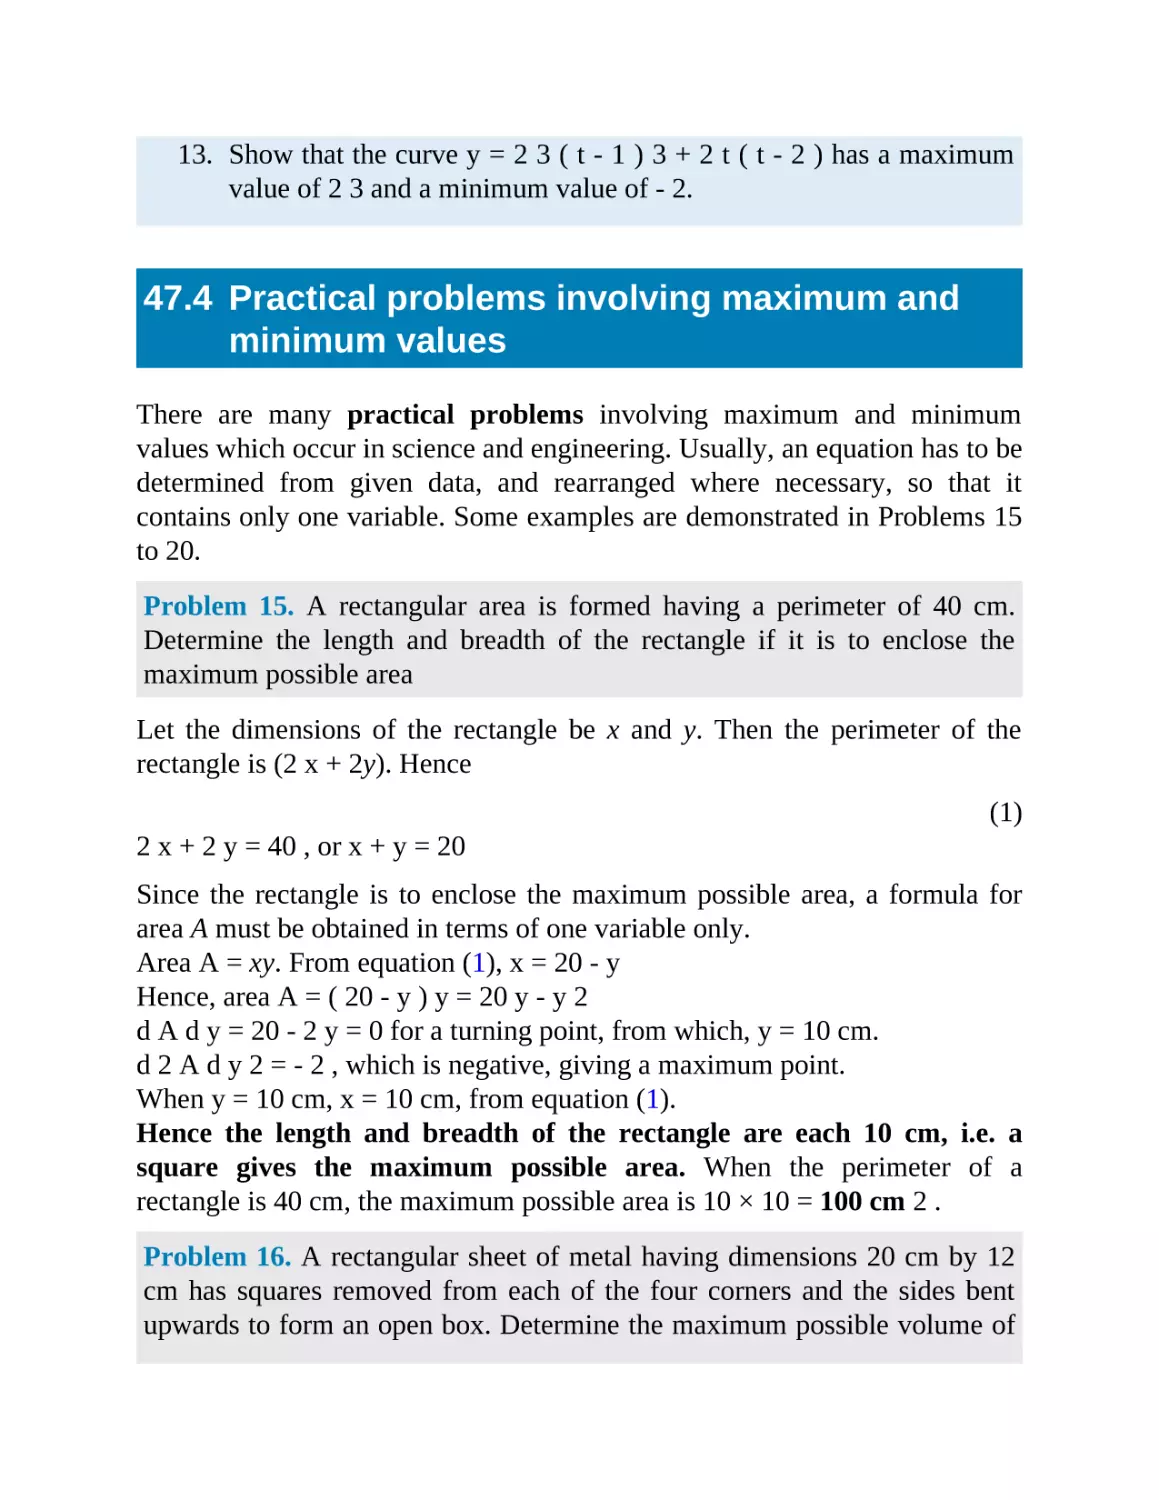 47.4 Practical problems involving maximum and minimum values